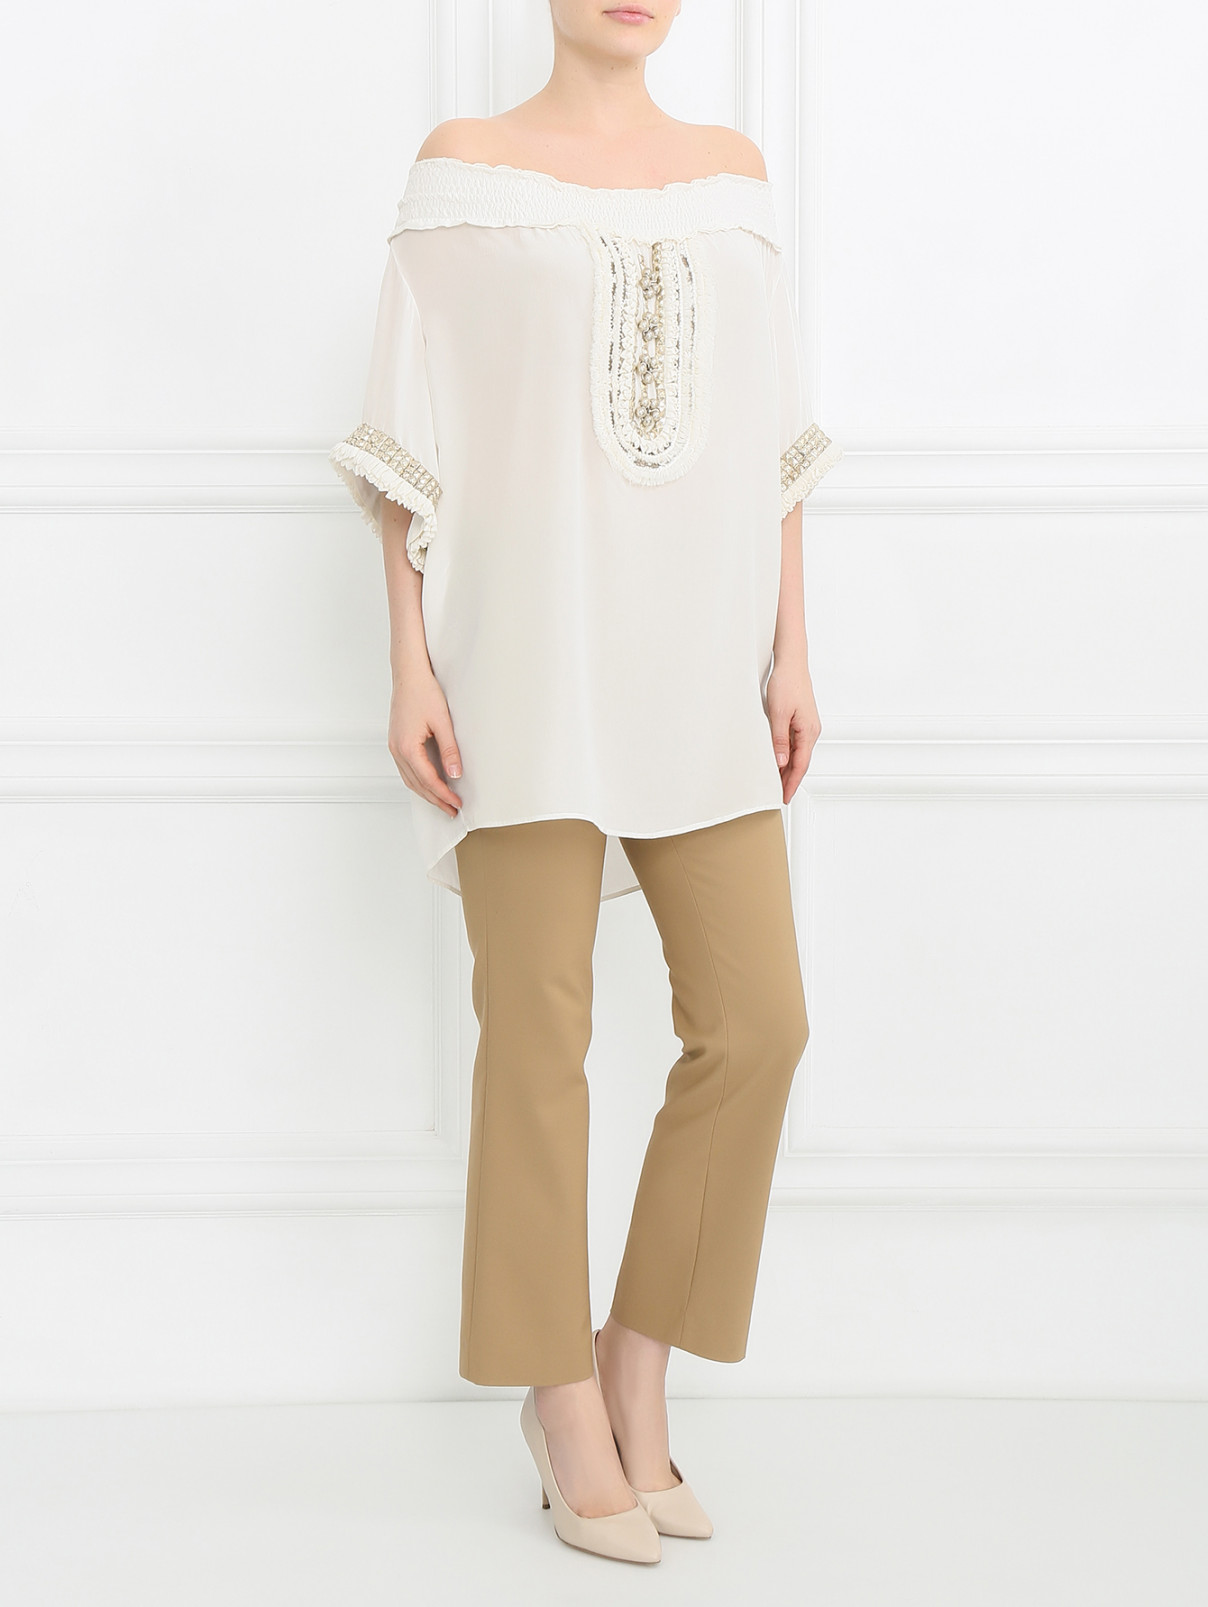 Блуза из шелка с металлической фурнитурой Maurizio Pecoraro  –  Модель Общий вид  – Цвет:  Белый